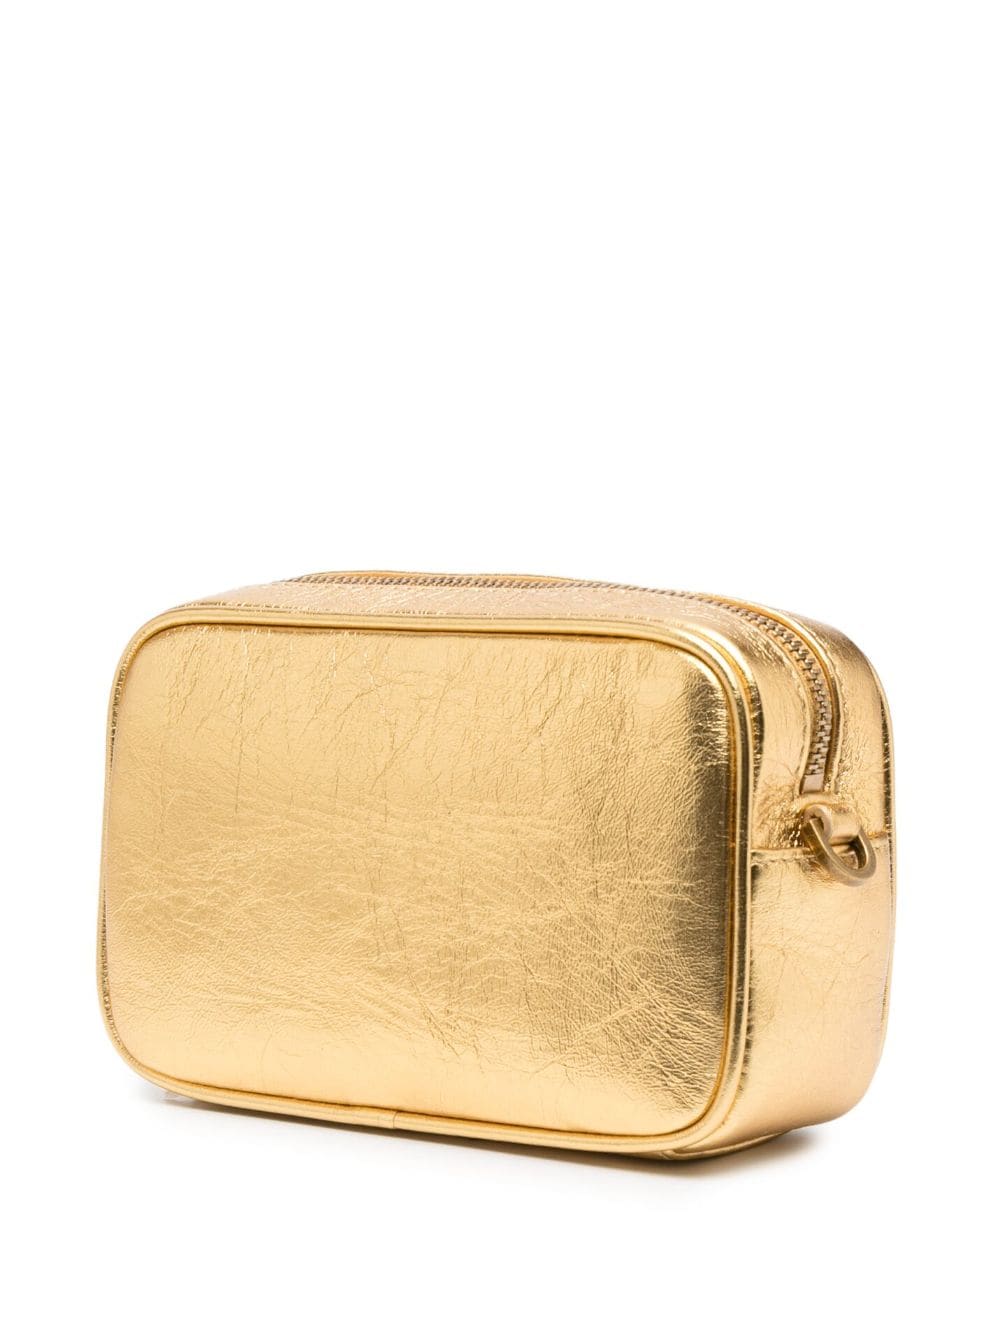 GG Mini Star Bag in Gold